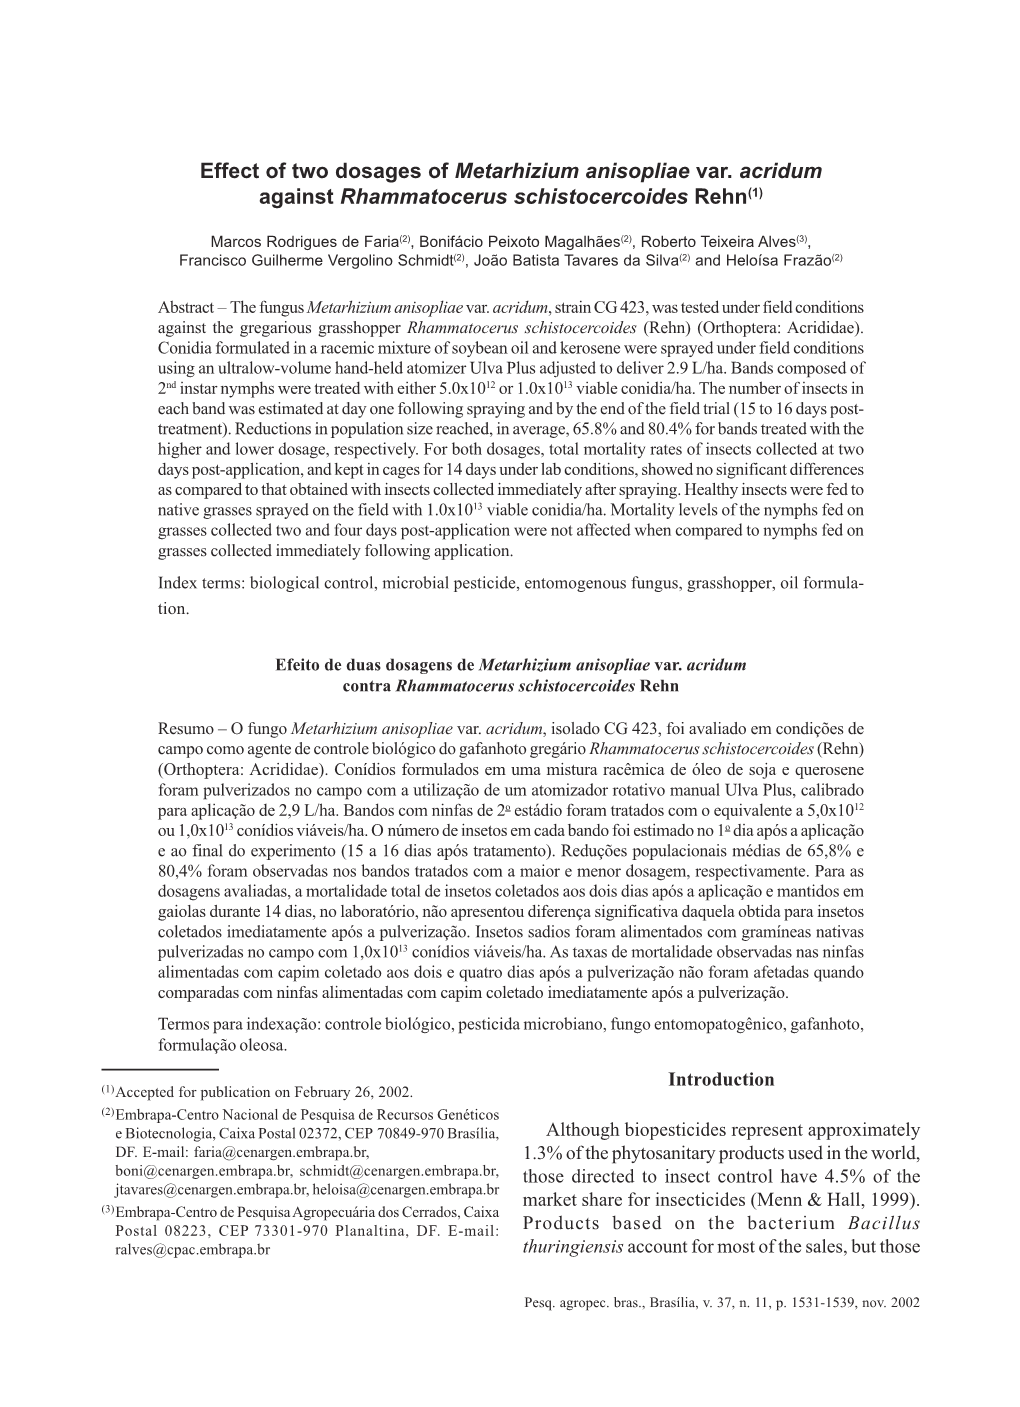 Effect of Two Dosages of Metarhizium Anisopliae Var. Acridum Against Rhammatocerus Schistocercoides Rehn(1)